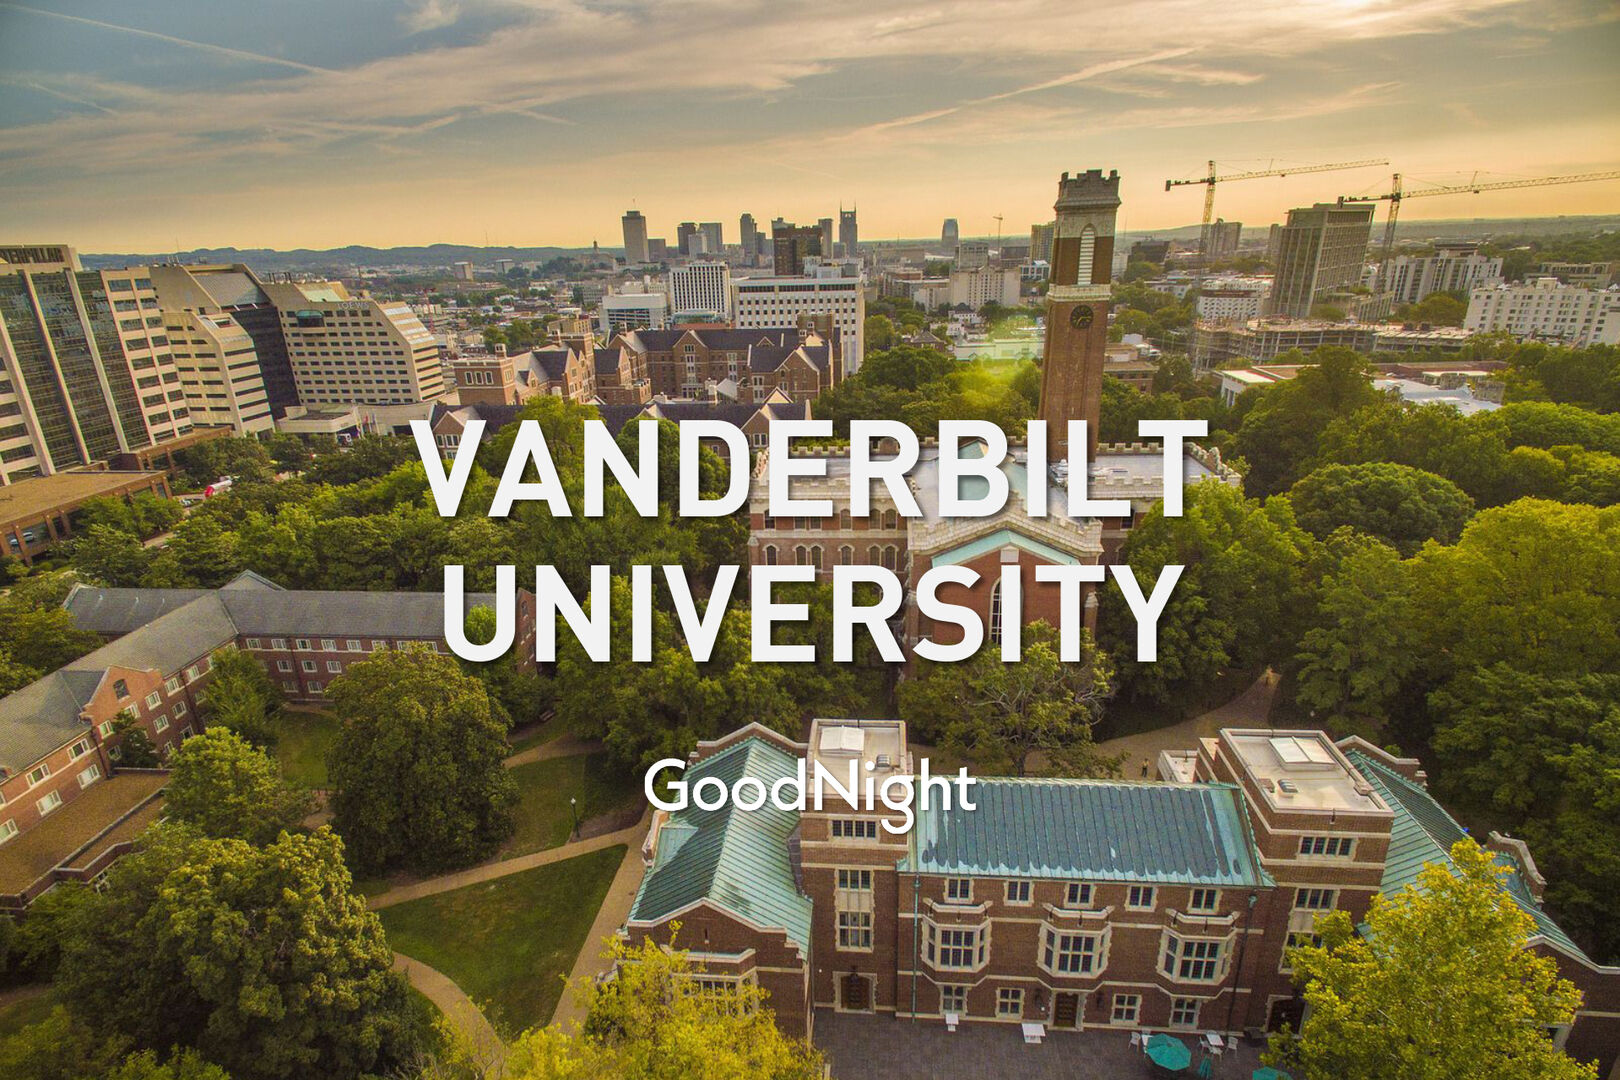 10 min walk: Vanderbilt University